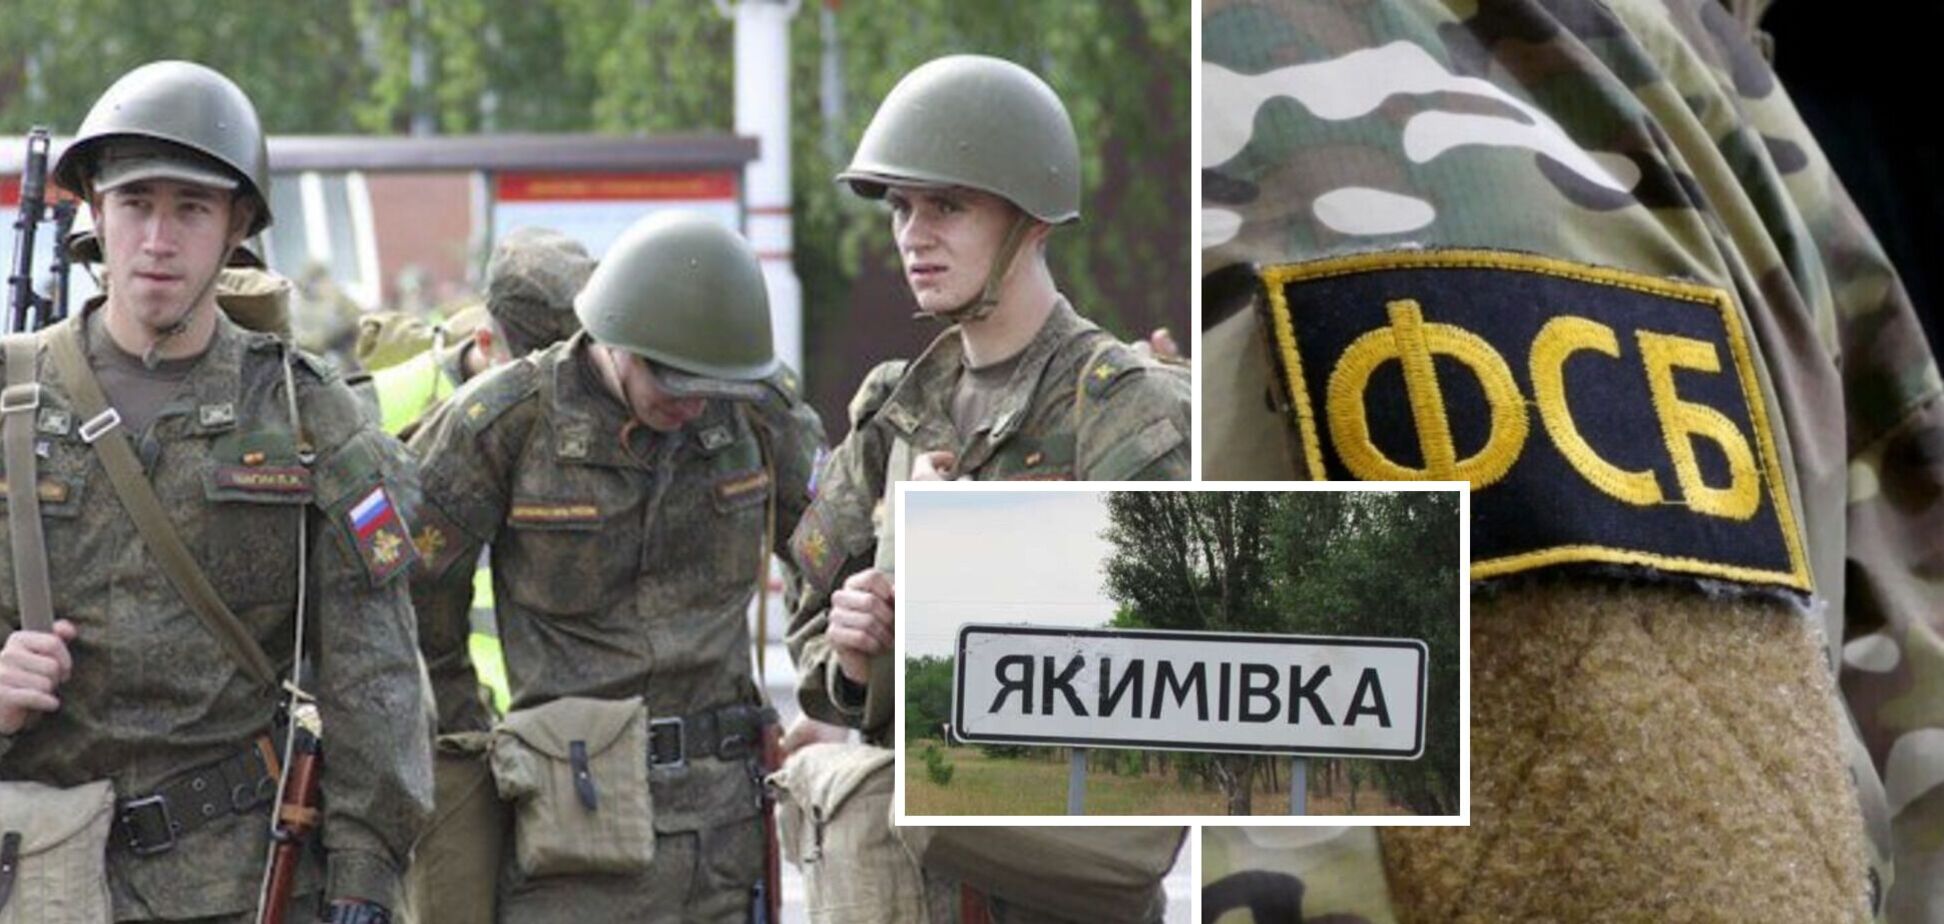 Часть окупантов в гражданской одежде: в Якимовку в Запорожье прибывает подкрепление ВС РФ и ФСБ